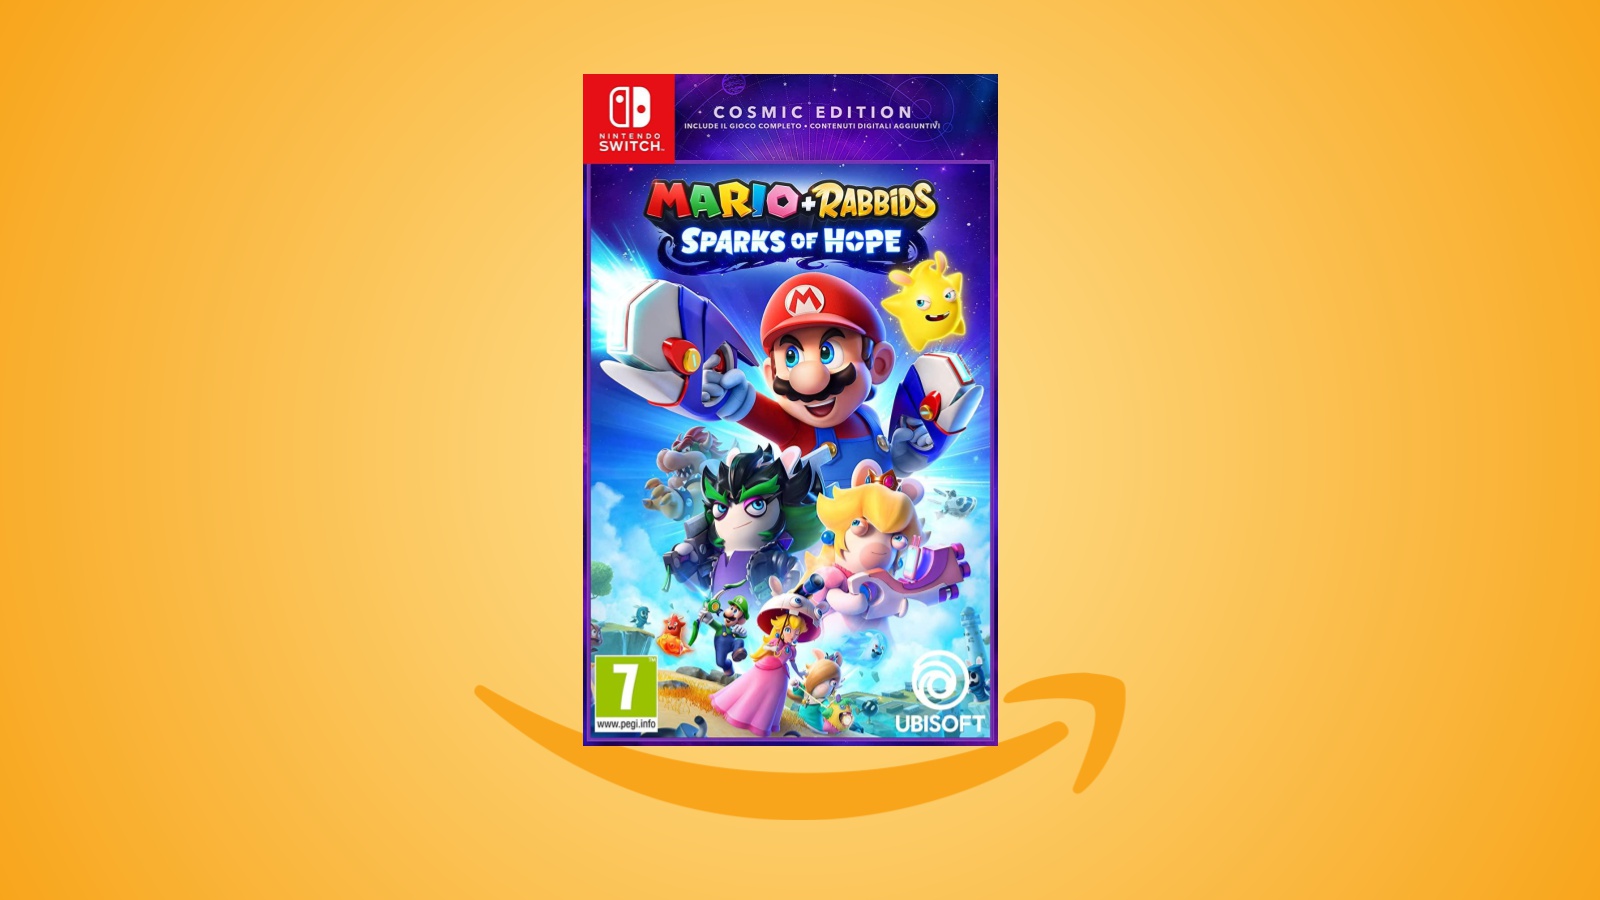 Offerte Amazon: Mario + Rabbids Sparks Of Hope Cosmic Edition è in sconto al prezzo minimo